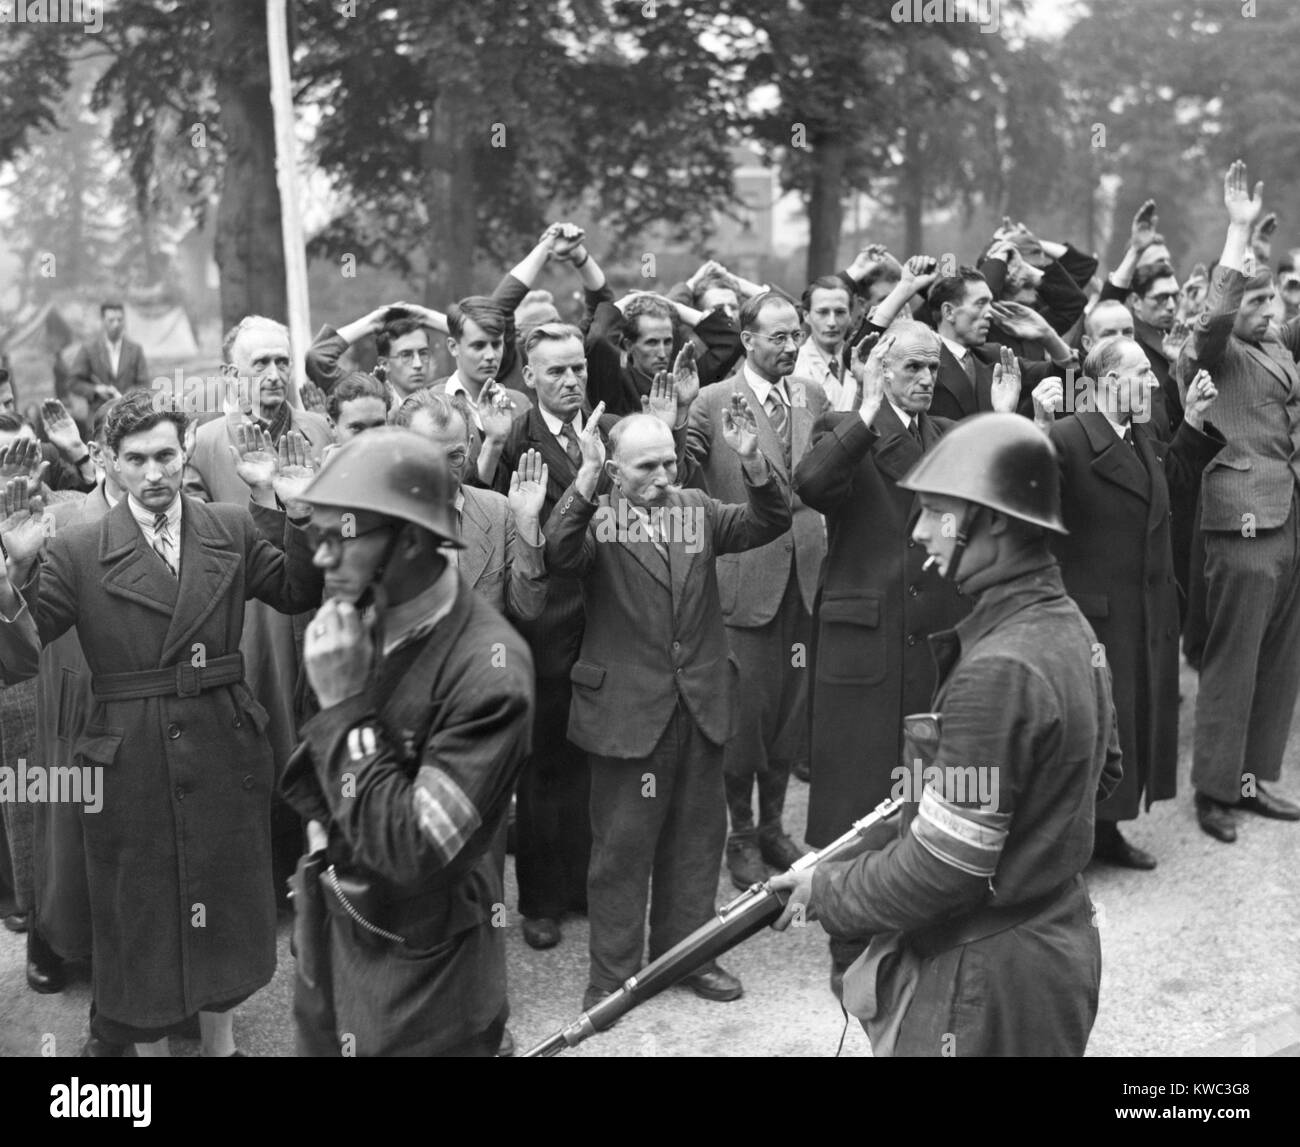 Collaboratori con nazista tedesco occupanti sotto arresto da parte di Nijmegen, Olanda. La città è stata liberata dagli americani truppe aviotrasportate durante l'operazione Market Garden. Sett. 20, 1944. Guerra Mondiale 2 (BSLOC_2015_13_93) Foto Stock